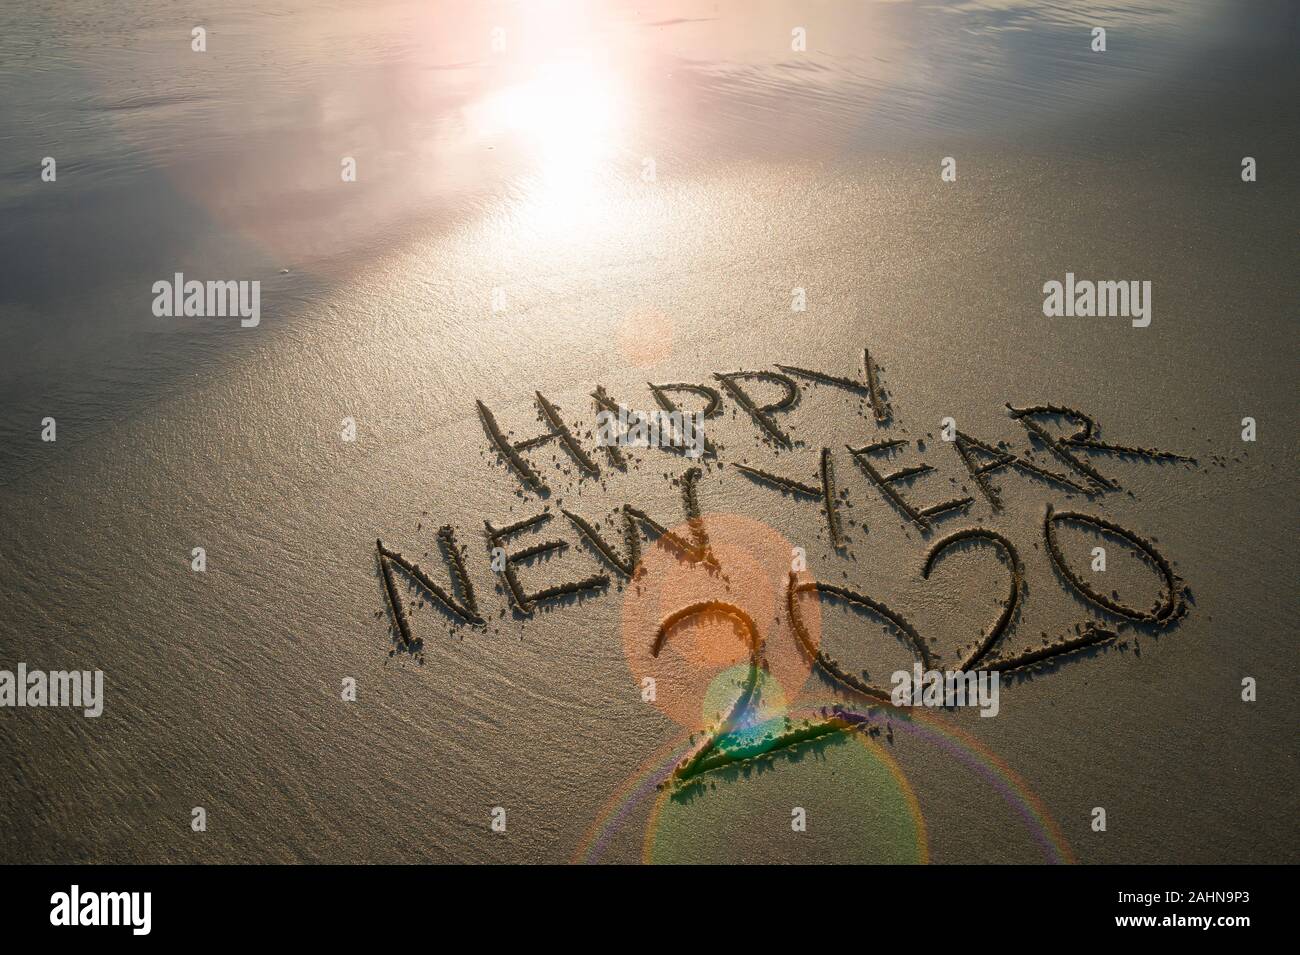 Felice Anno Nuovo 2020 manoscritte del messaggio in sabbia pulita sotto incandescente lens flare sunrise su una spiaggia deserta Foto Stock